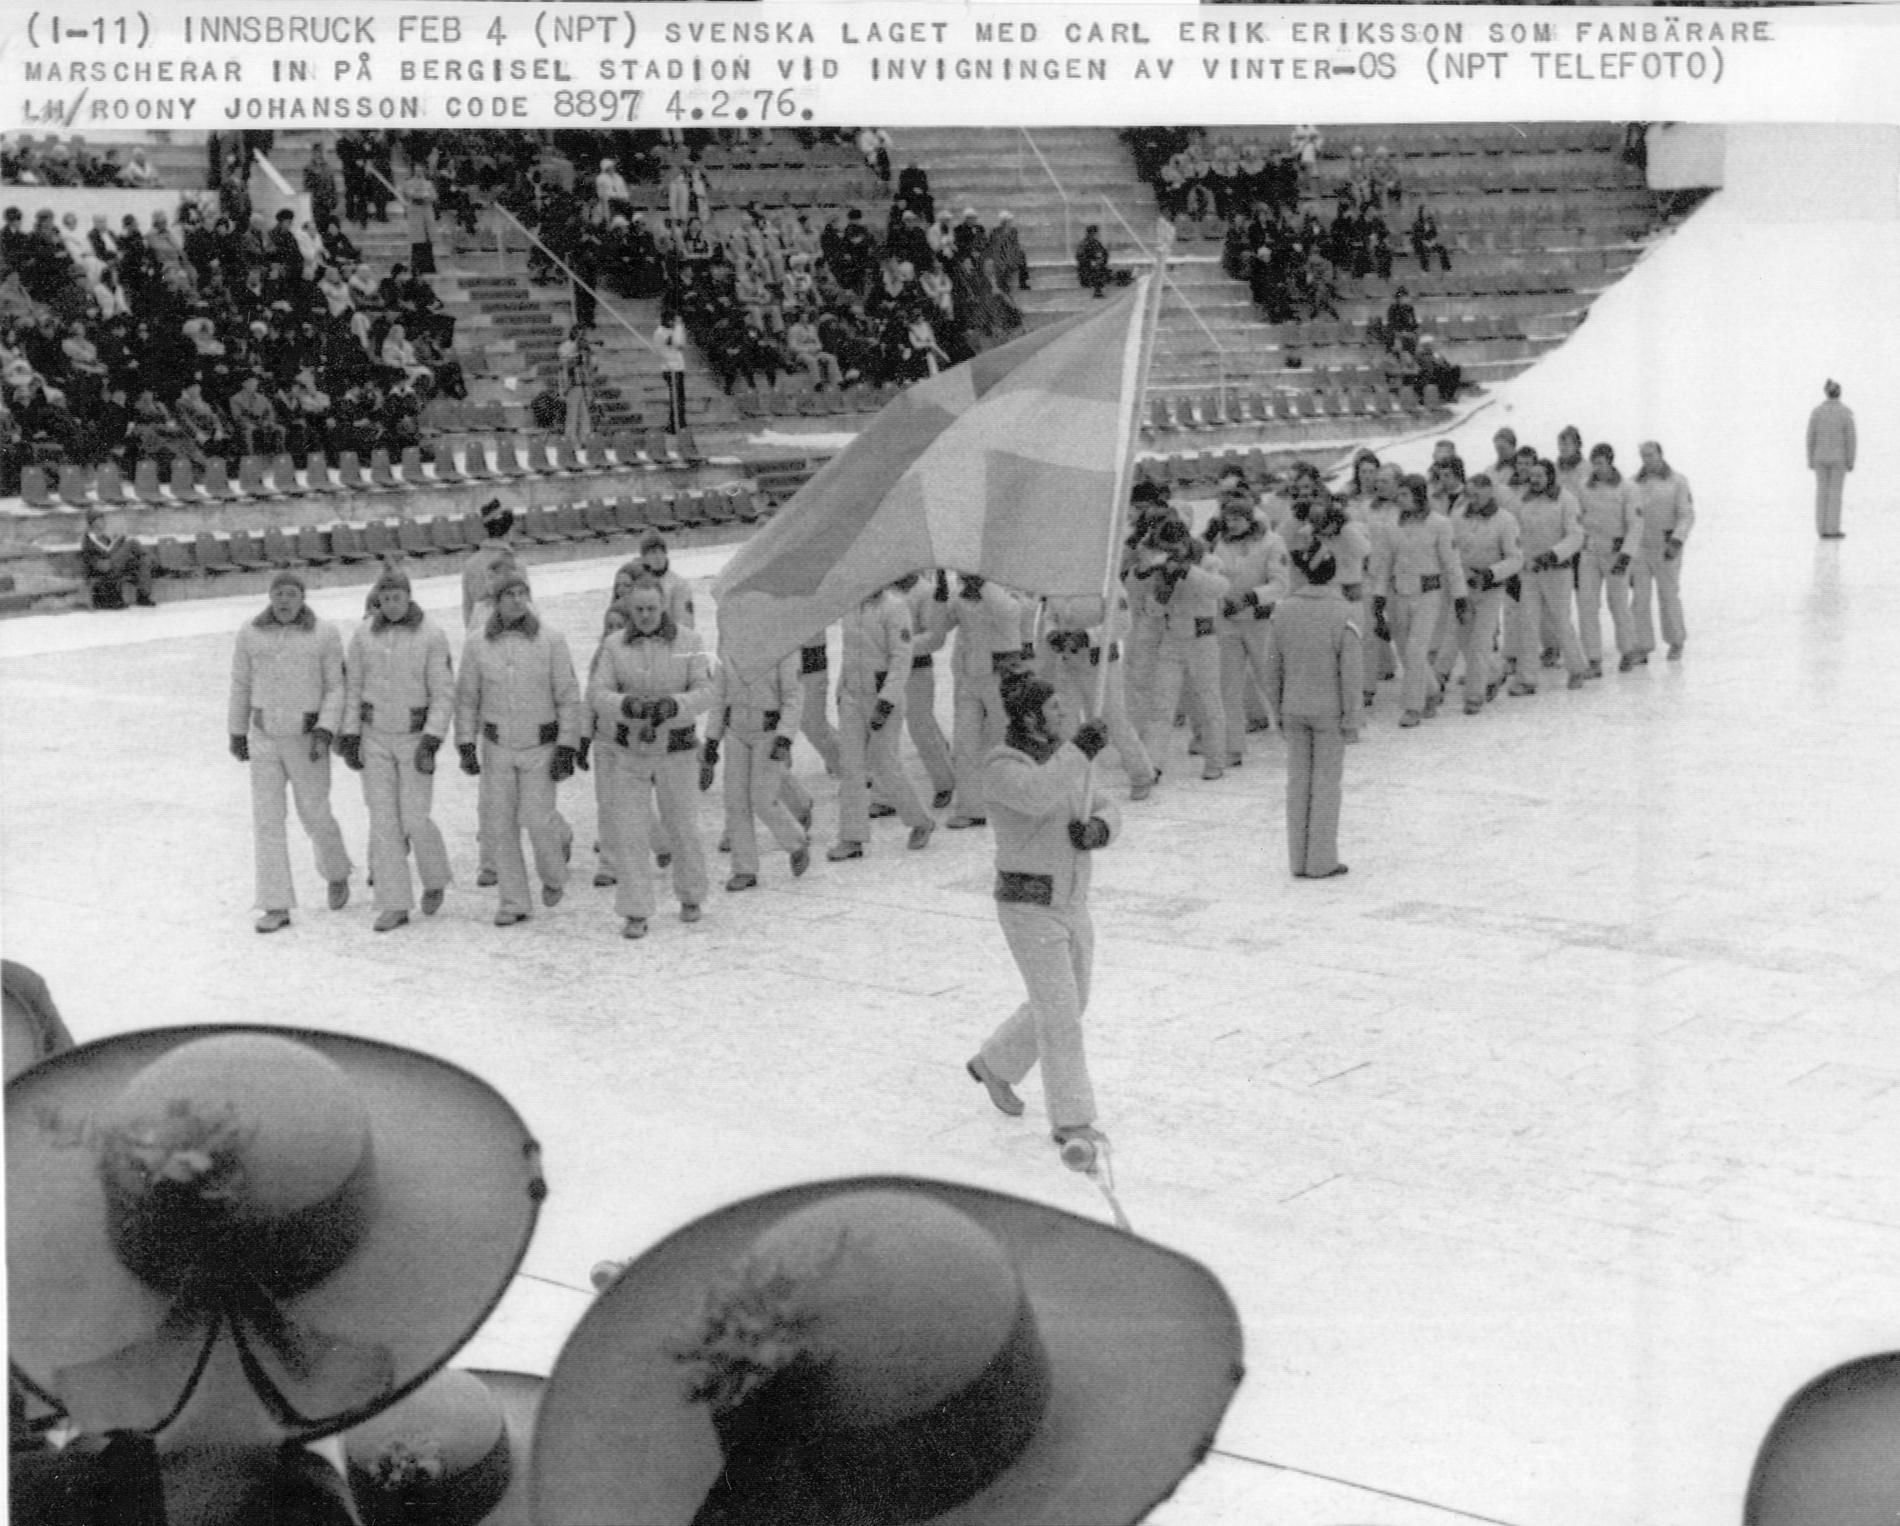  Den svenska truppen under OS i Innsbruck 1976 leddes av fanbäraren Carl-Erik Eriksson.